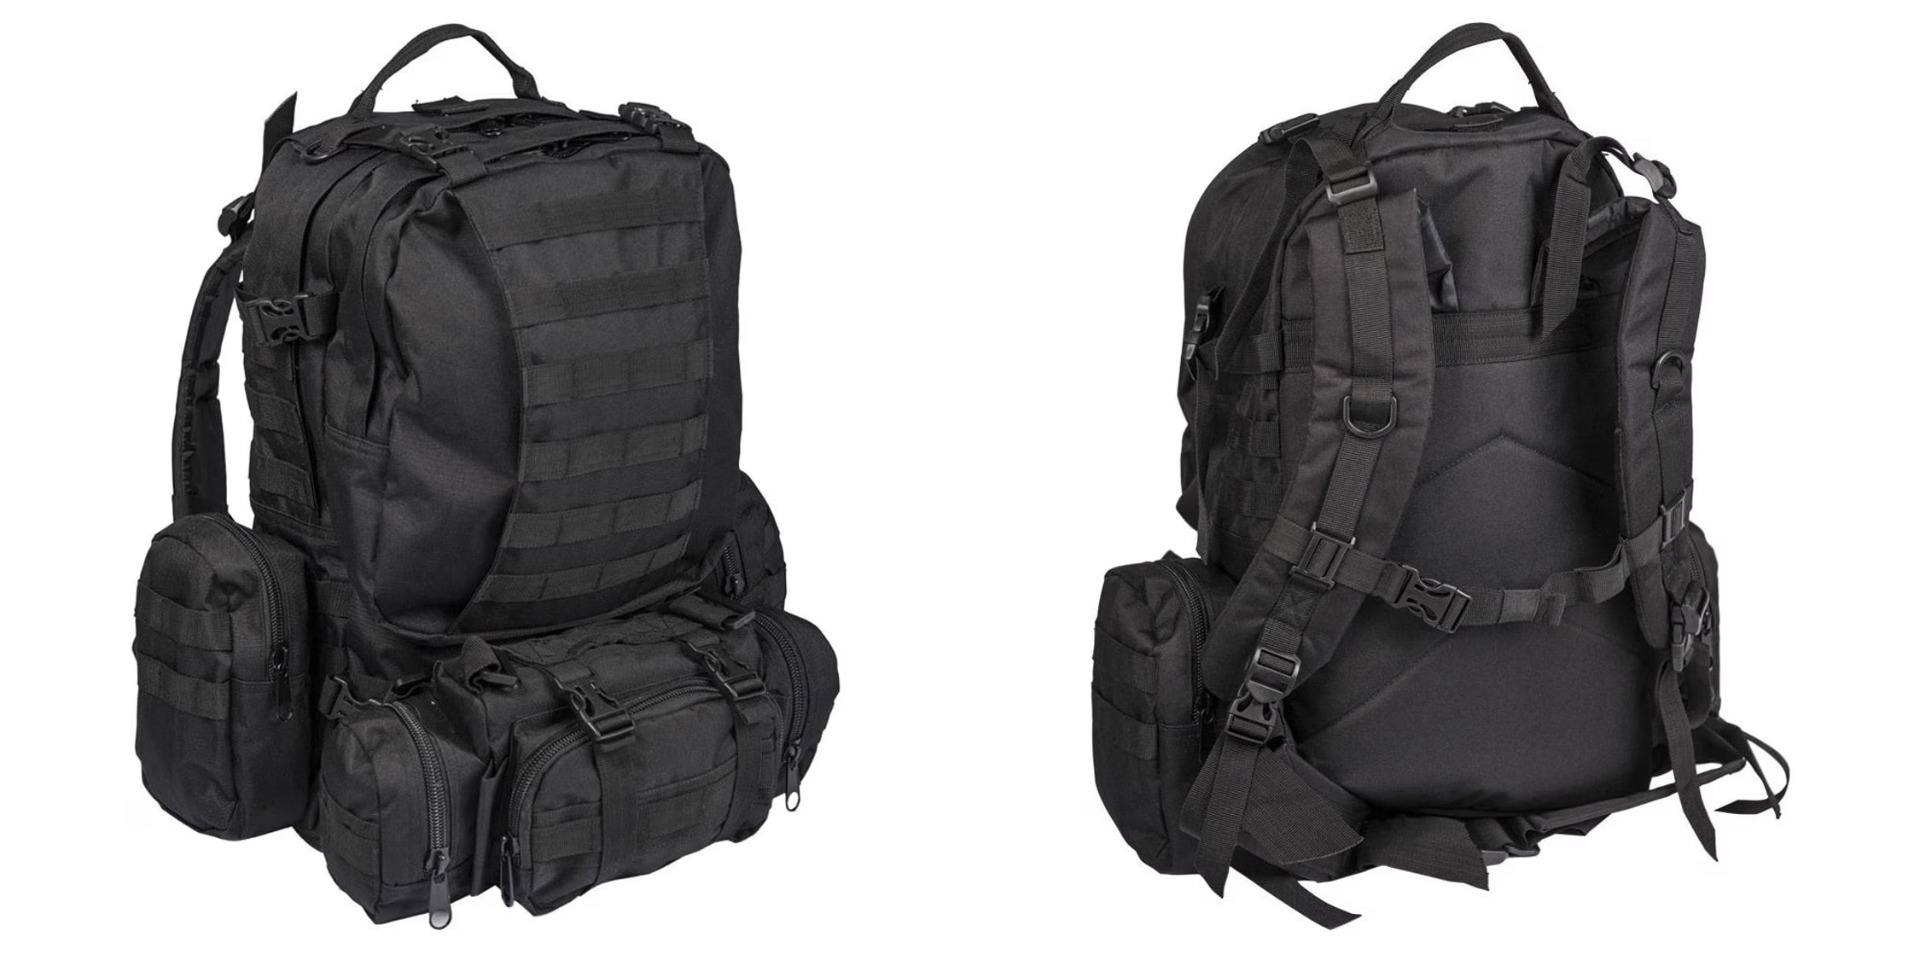 Izberite najboljši vojaški nahrbtnik - Defense Pack Assembly, prostornine 36 litrov, v črni barvi. Trpežen, udoben in vodoodporen za vojake, pohodnike, lovce in kamping navdušence. Opremljen.si - nakupite zdaj!